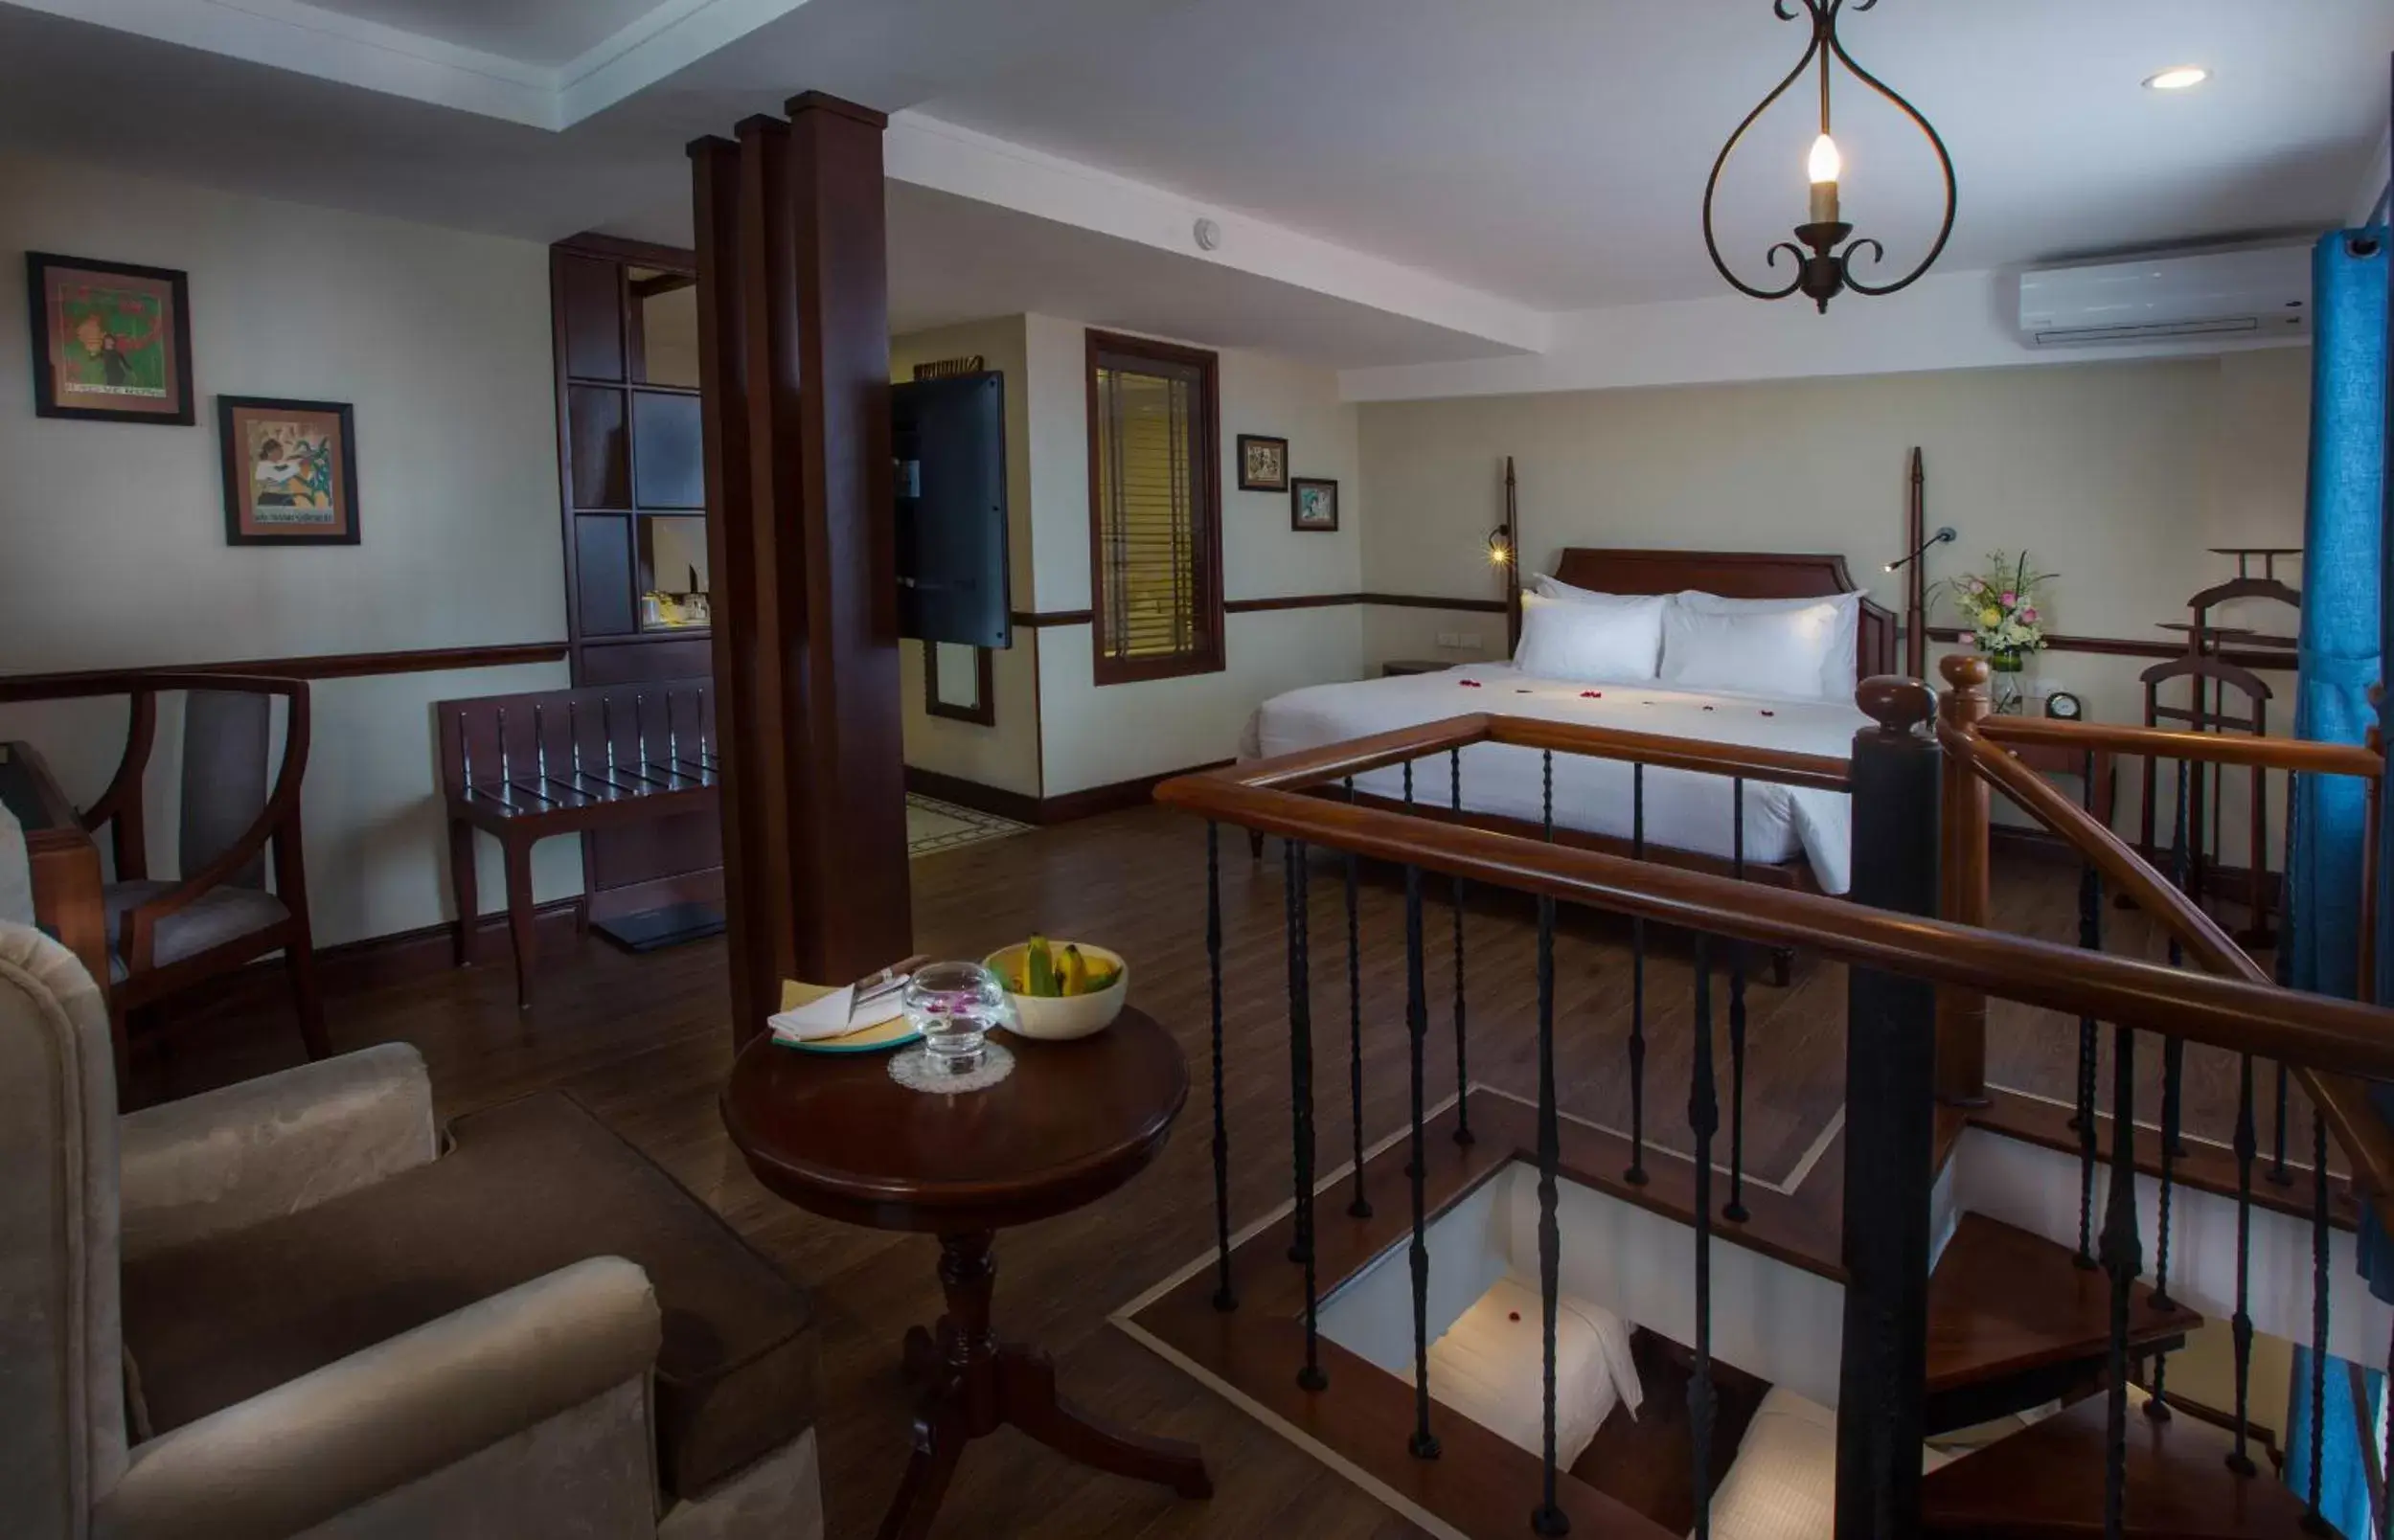 Bedroom in Hanoi La Siesta Hotel & Spa